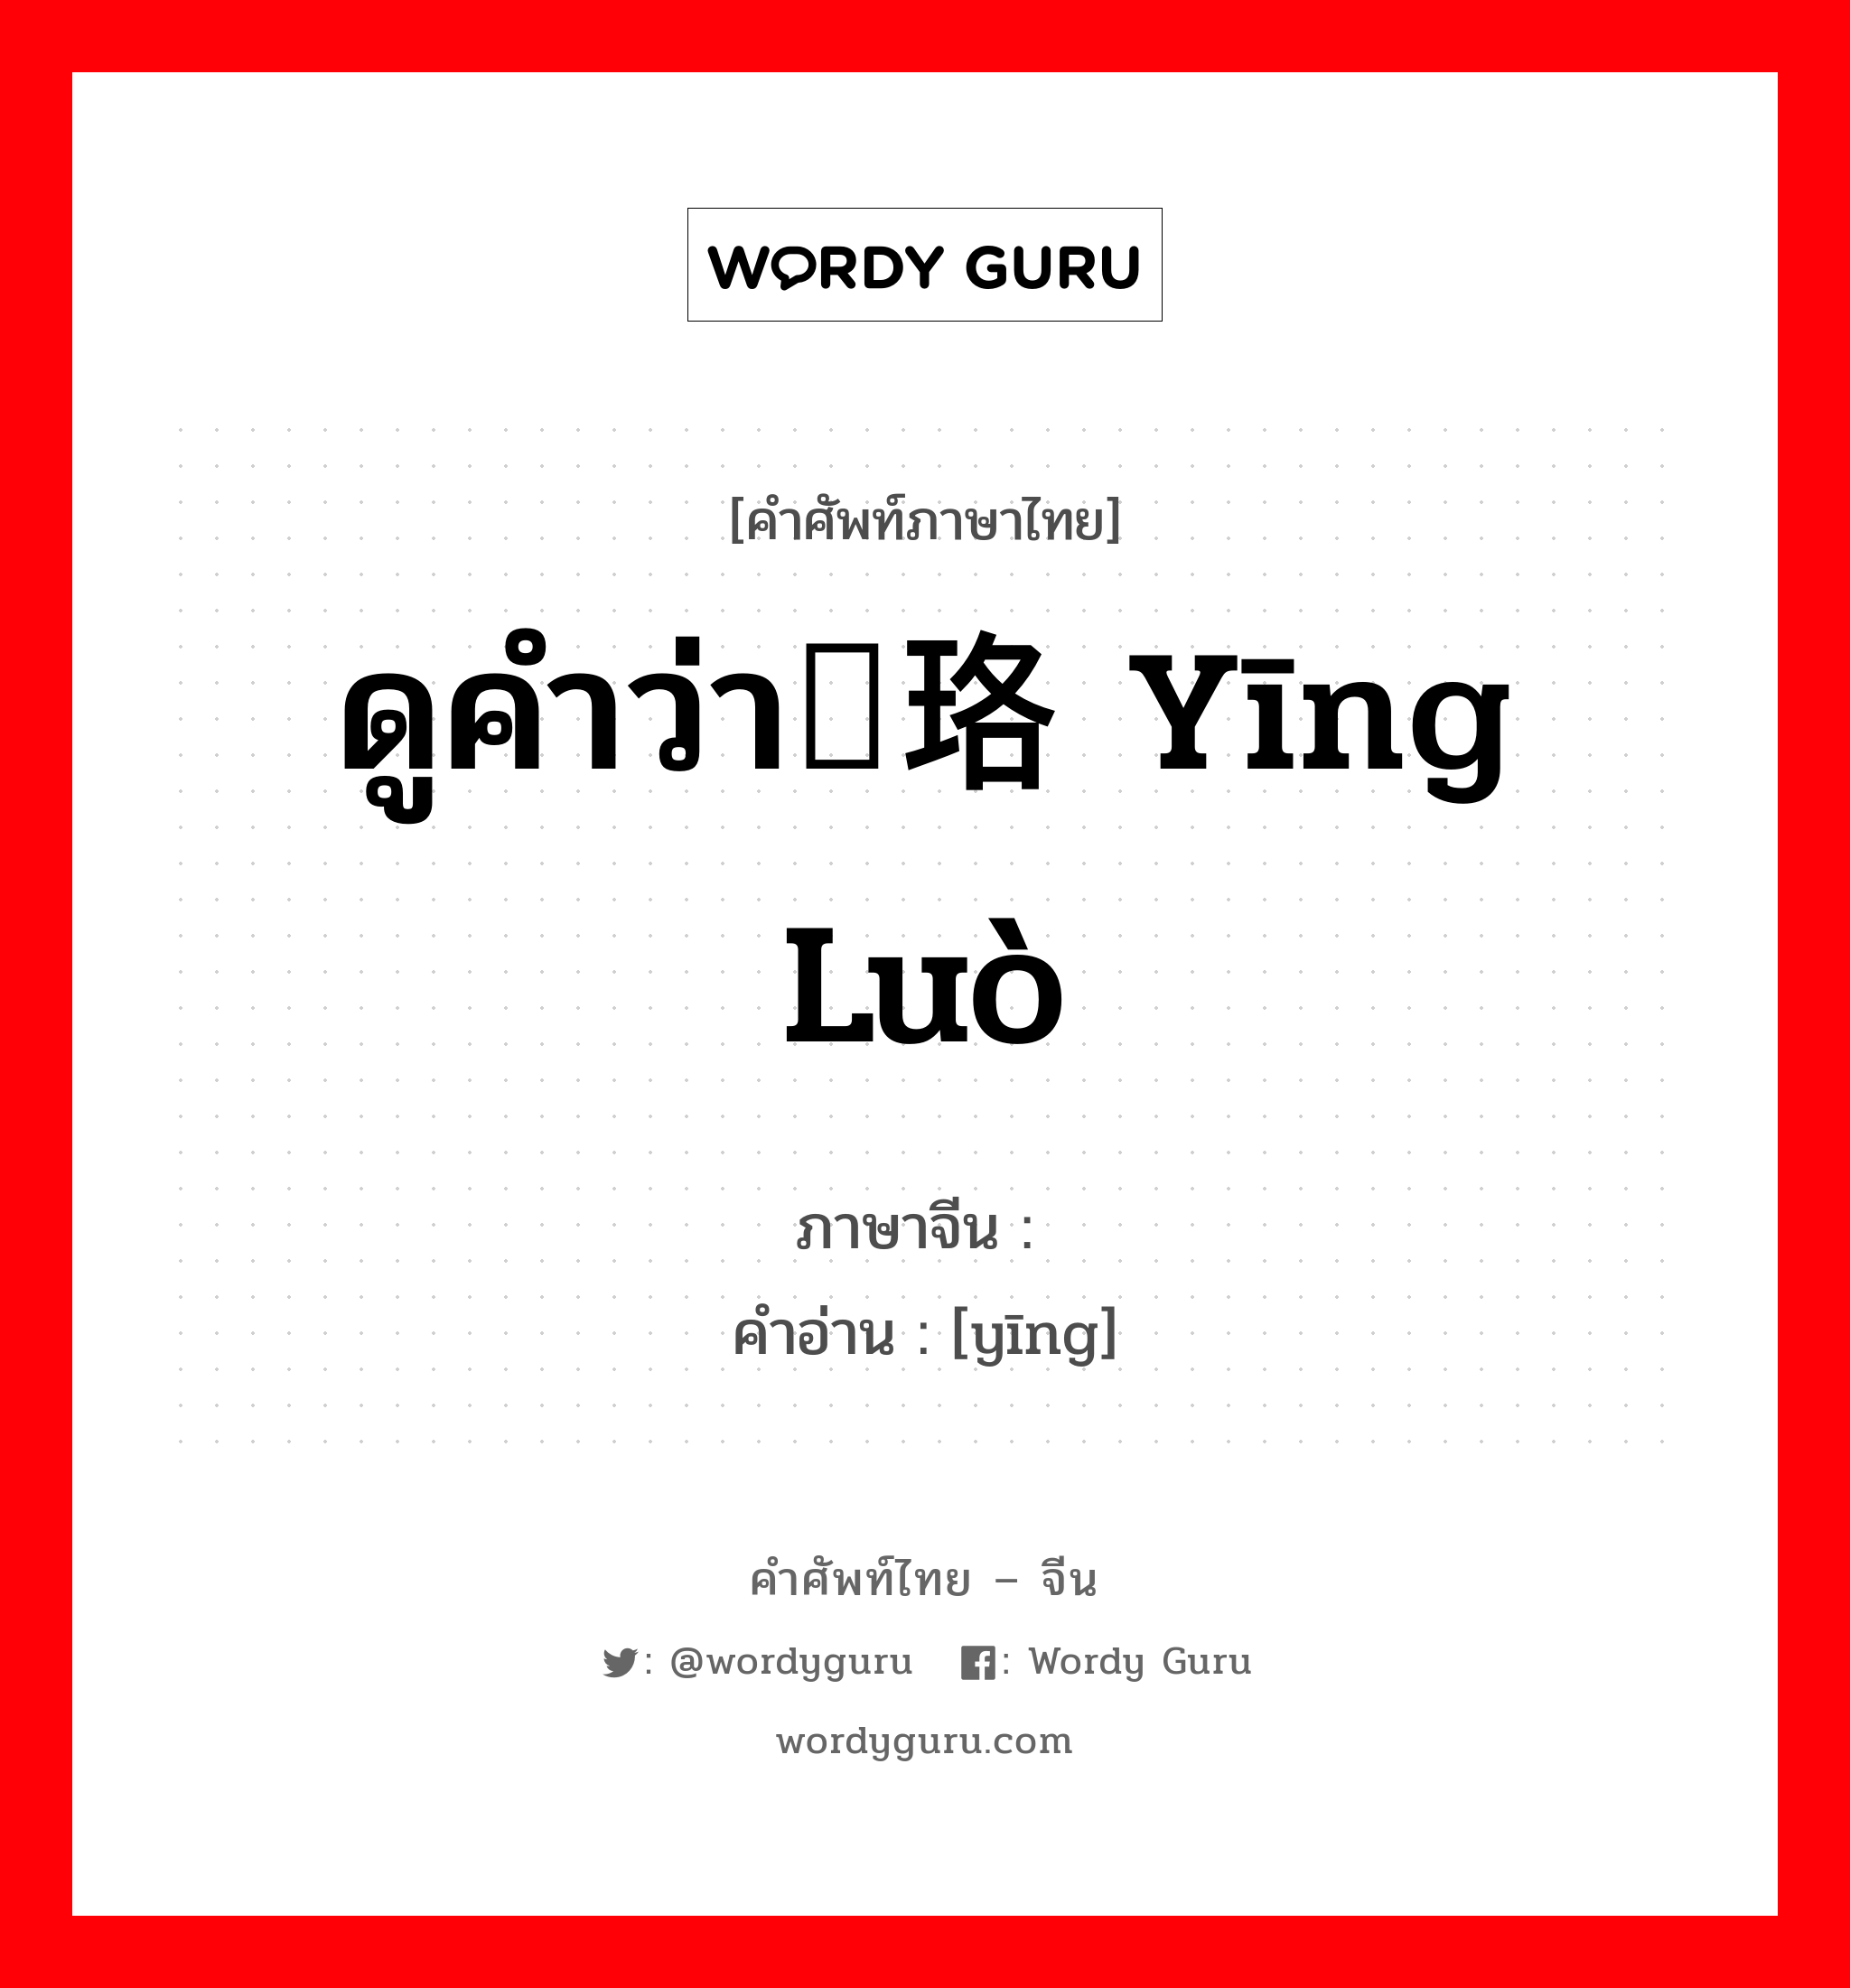 ดูคำว่า璎珞 yīng luò ภาษาจีนคืออะไร, คำศัพท์ภาษาไทย - จีน ดูคำว่า璎珞 yīng luò ภาษาจีน 璎 คำอ่าน [yīng]